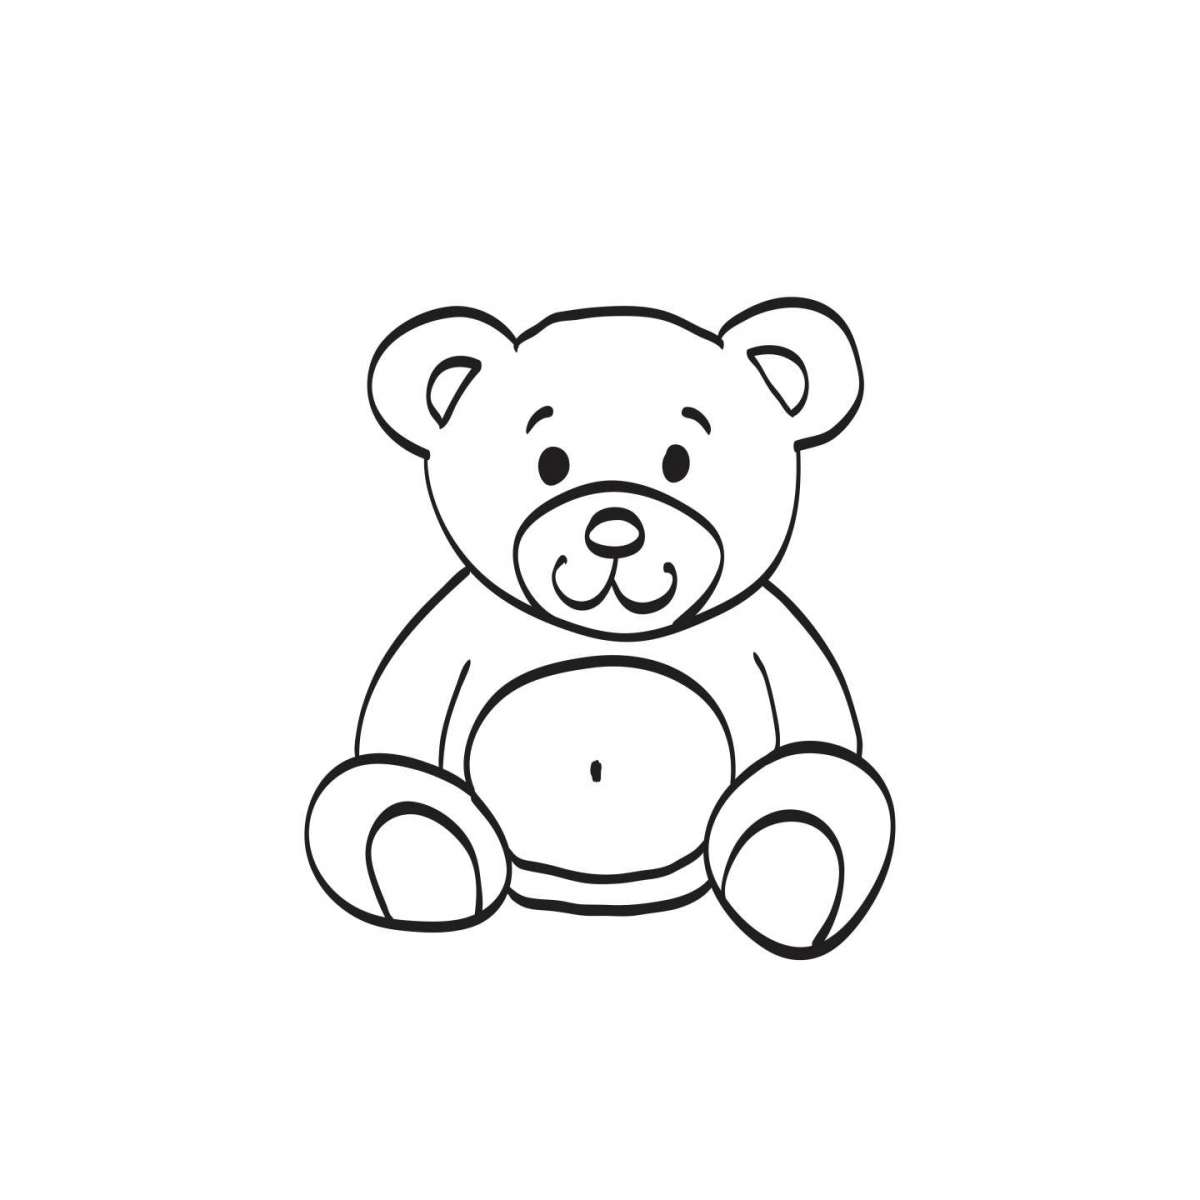 Disegno di un orsetto da stampare